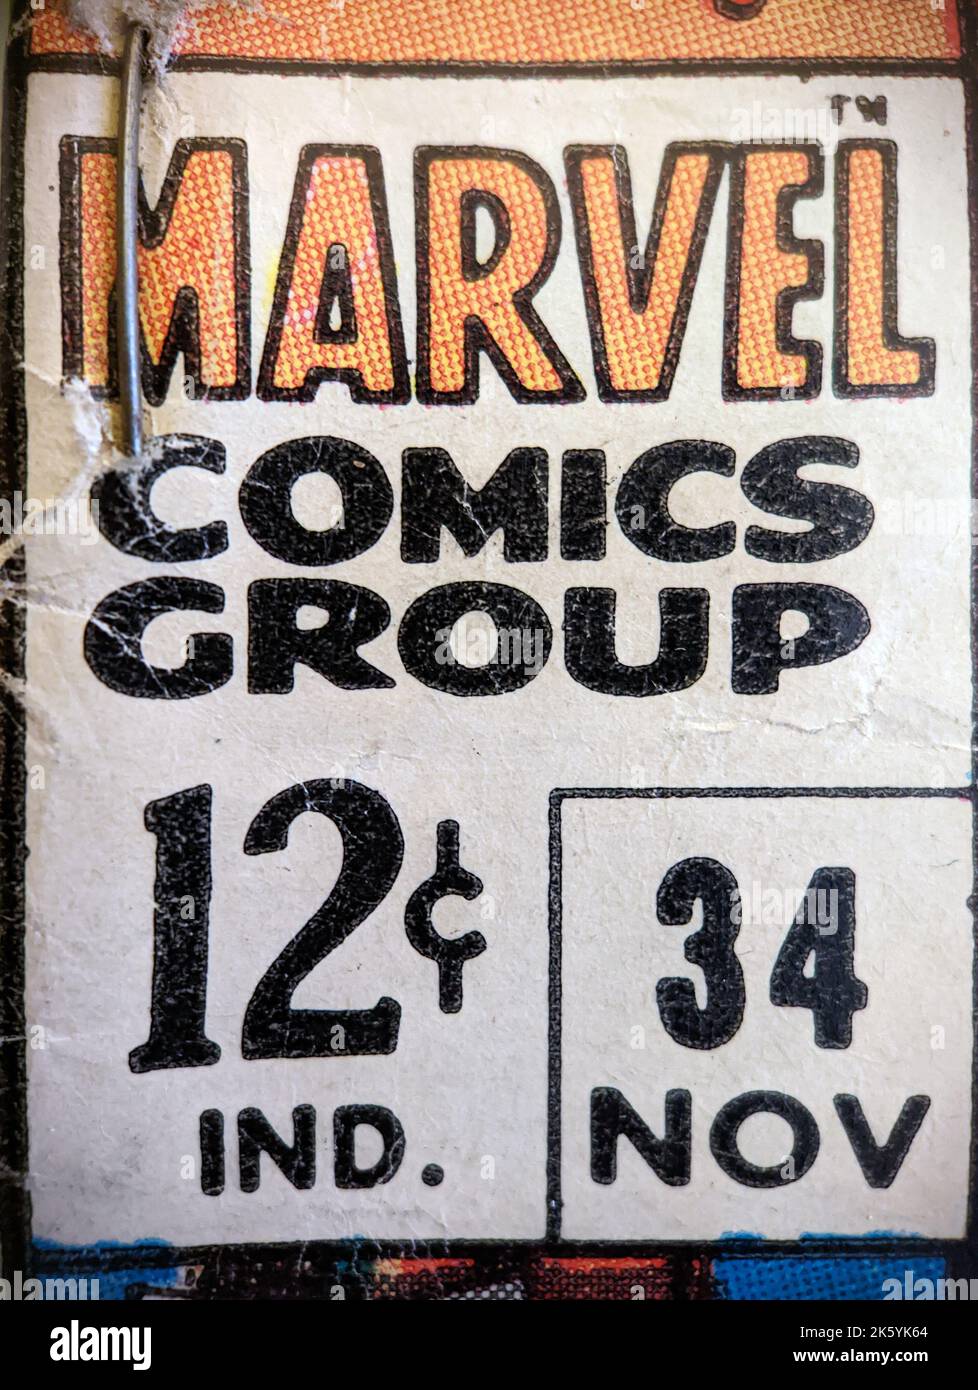 New York City, États-Unis - octobre 2022 : une vue rapprochée de l'étiquette de bande dessinée Marvel vintage qui a été vendu à l'origine pour 12 cents est exposée dans un ancien comi Banque D'Images